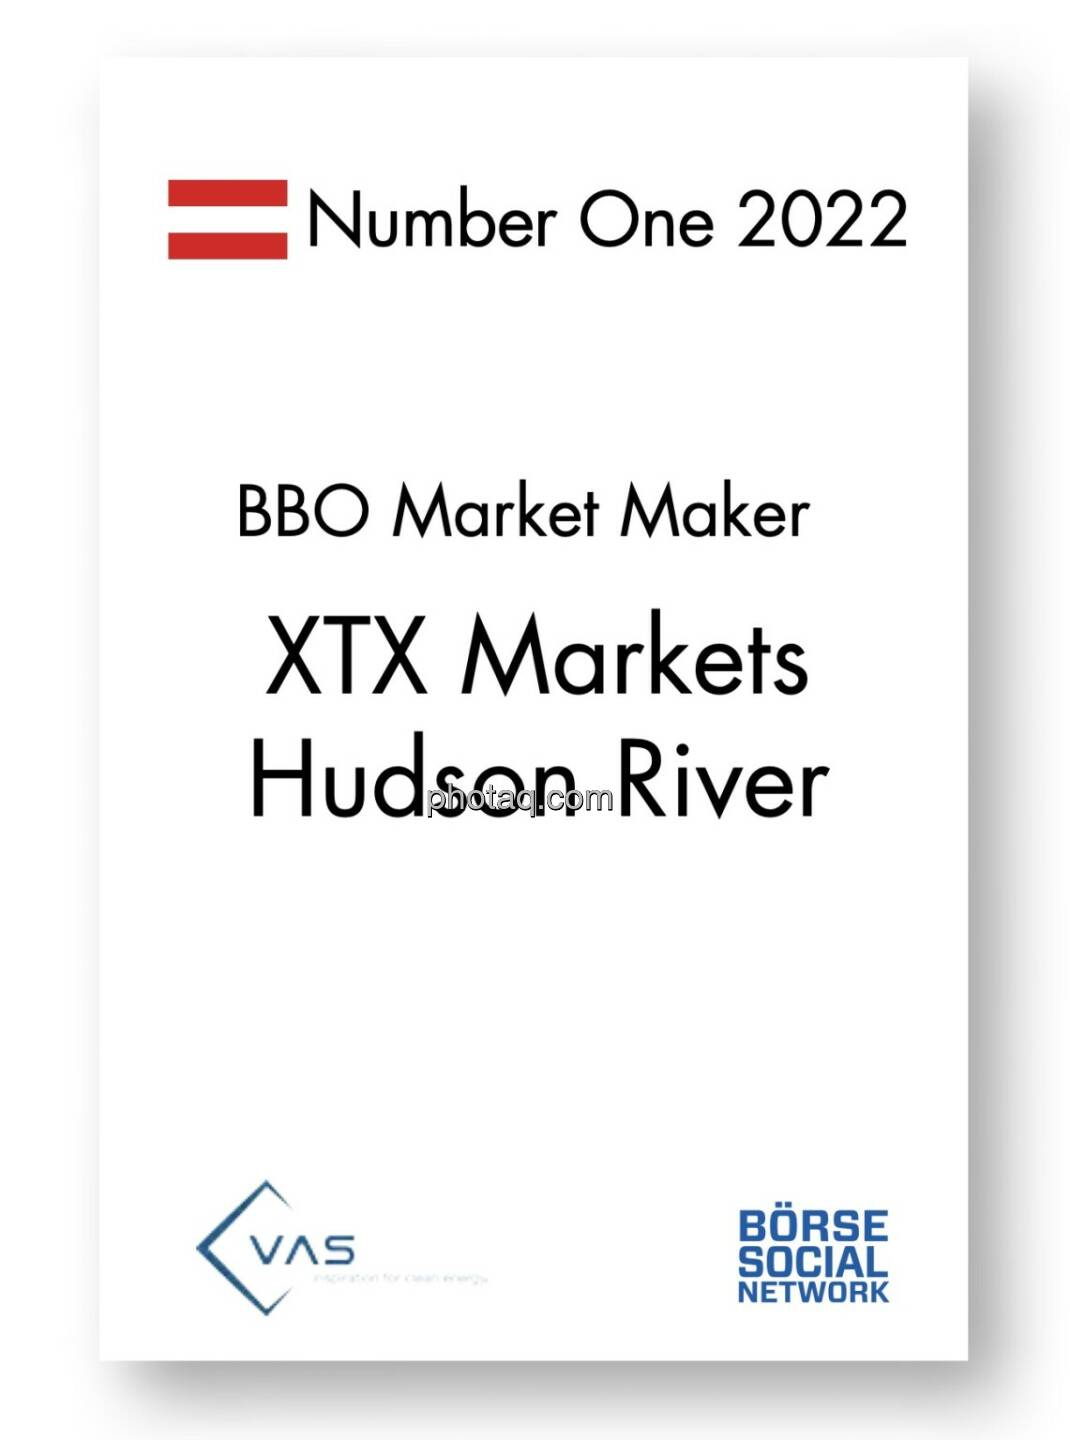 Number One BBO Market Maker: XTX Markets, Hudson River